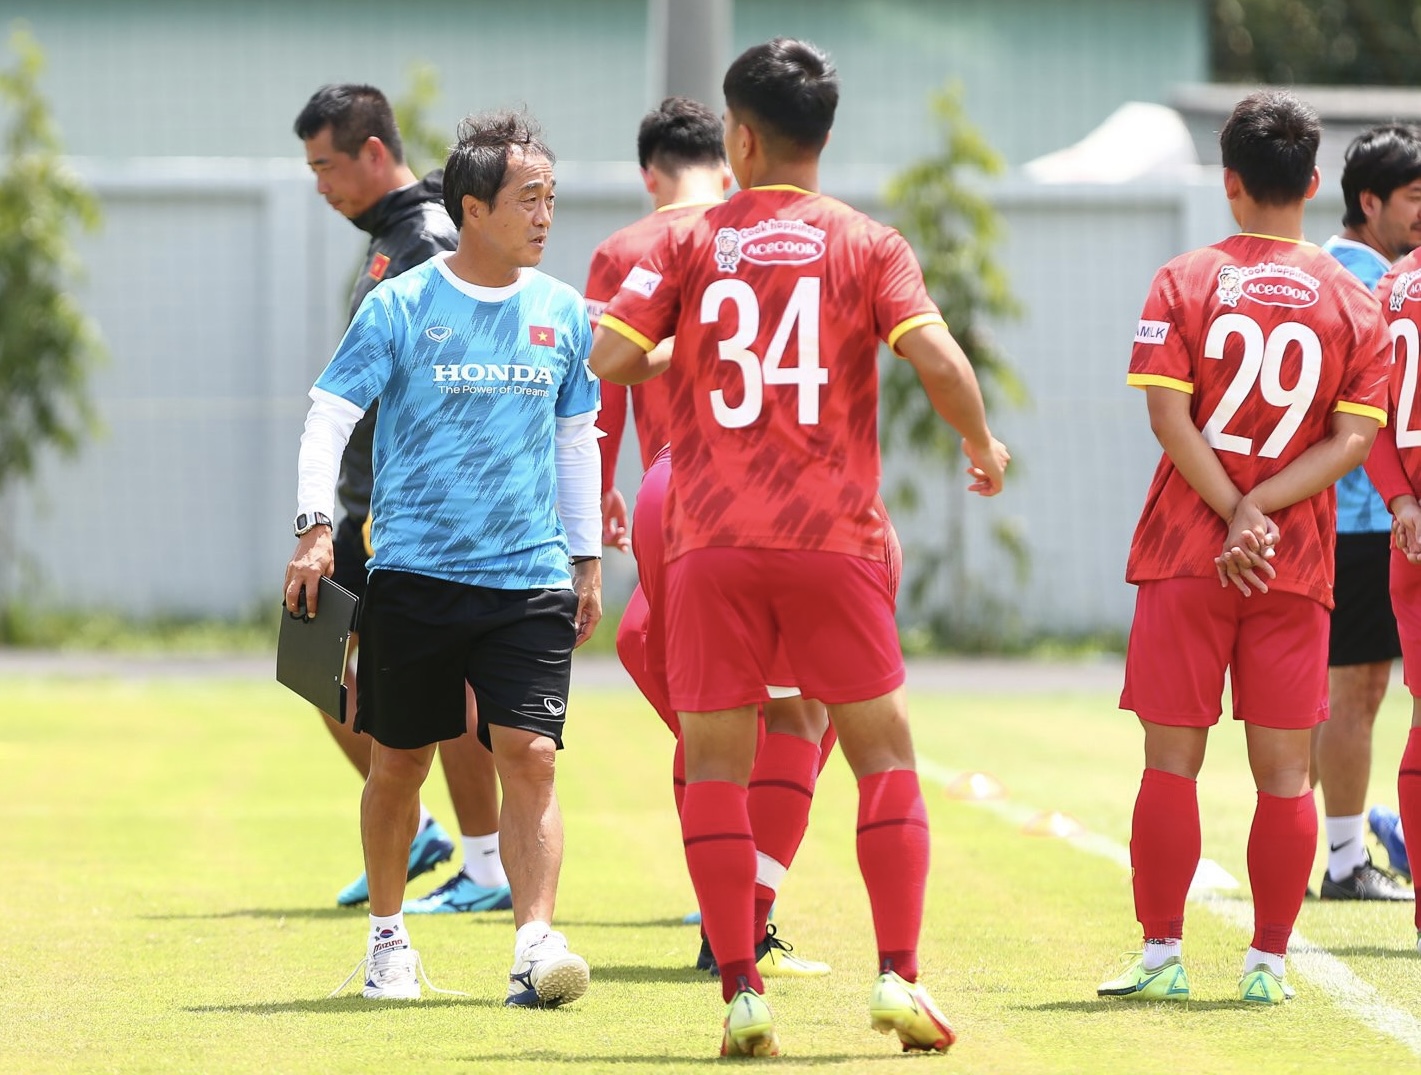 Sáng 23.9, đội tuyển Việt Nam có buổi tập trên sân bóng đá Quận 7 chuẩn bị cho trận gặp Ấn Độ ở giải giao hữu quốc tế - Hưng Thịnh 2022. Theo ghi nhận, huấn luyện viên Park Hang-seo không xuất hiện và trợ lý Lee Young-jin là người chỉ đạo các cầu thủ.